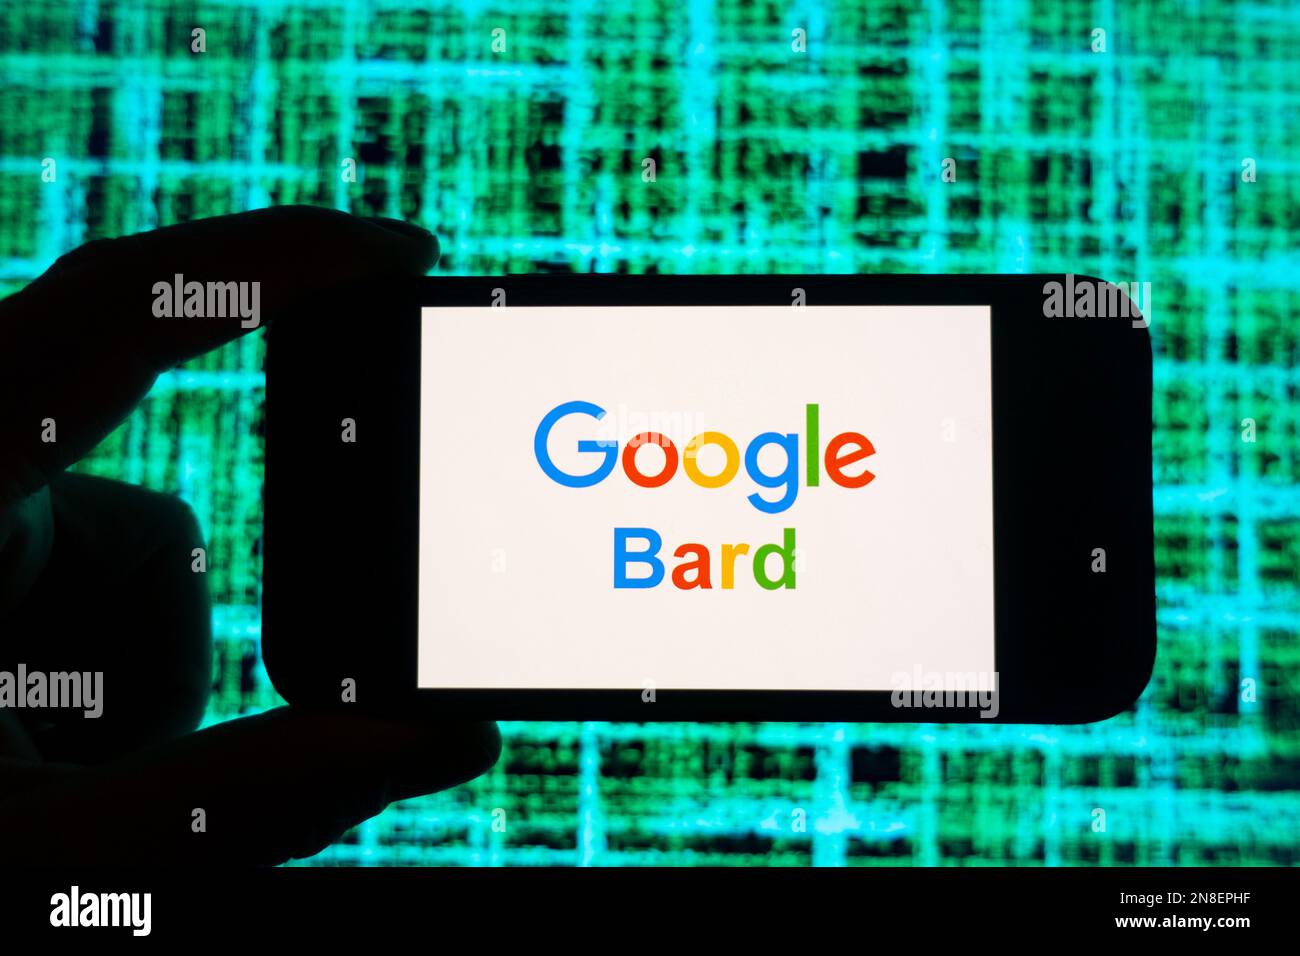 Digitale Zusammensetzung des Google Bard AI-Chatbot-Logos auf dem Bildschirm des Telefons Stockfoto